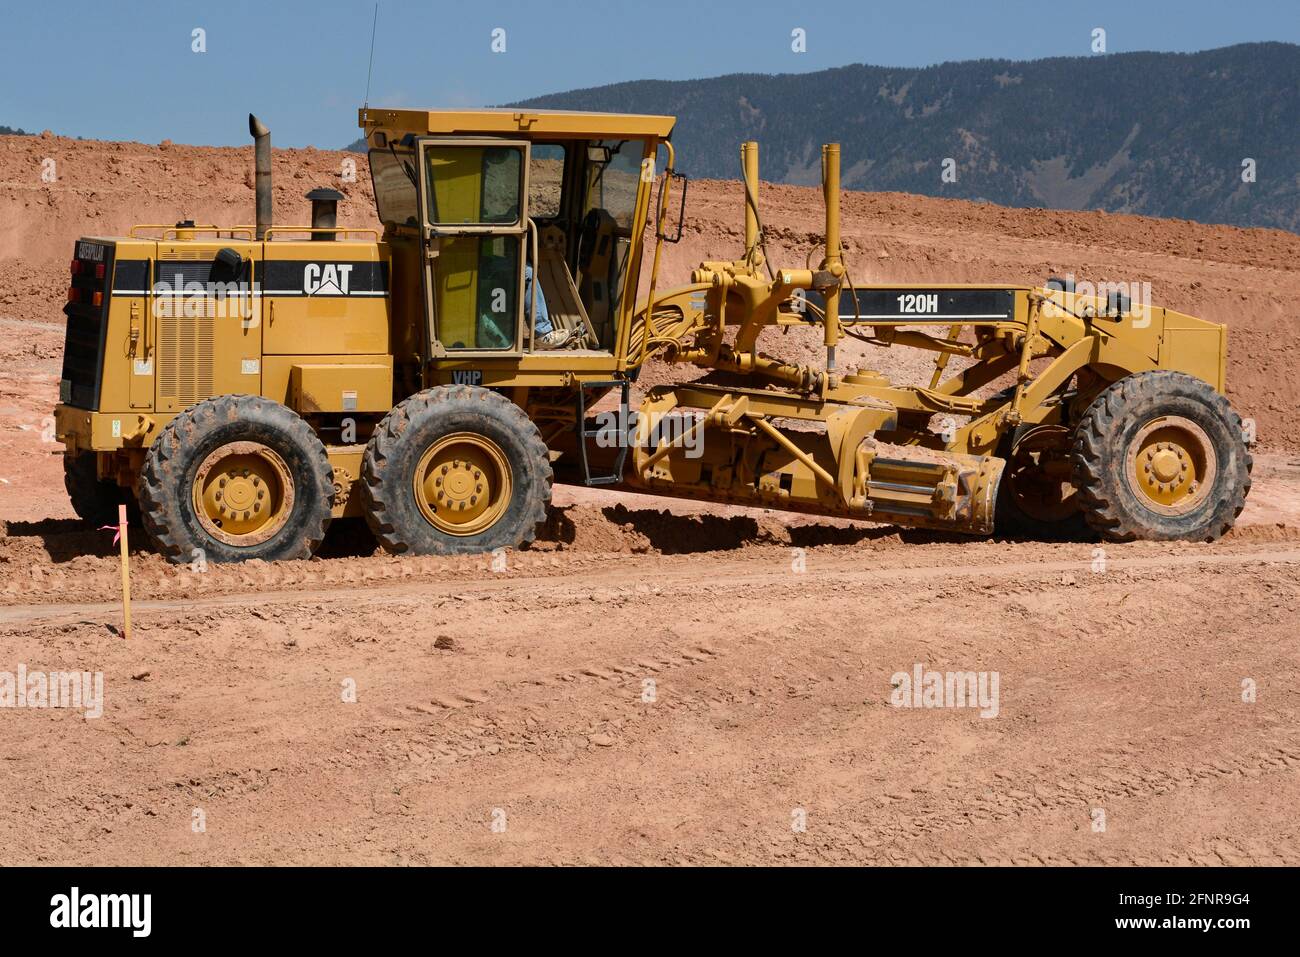 Un operatore di attrezzature pesanti utilizza un motorgrader Caterpillar 120H per movimentare lo sporco in un cantiere di costruzione di strade a Santa Fe, New Mexico. Foto Stock